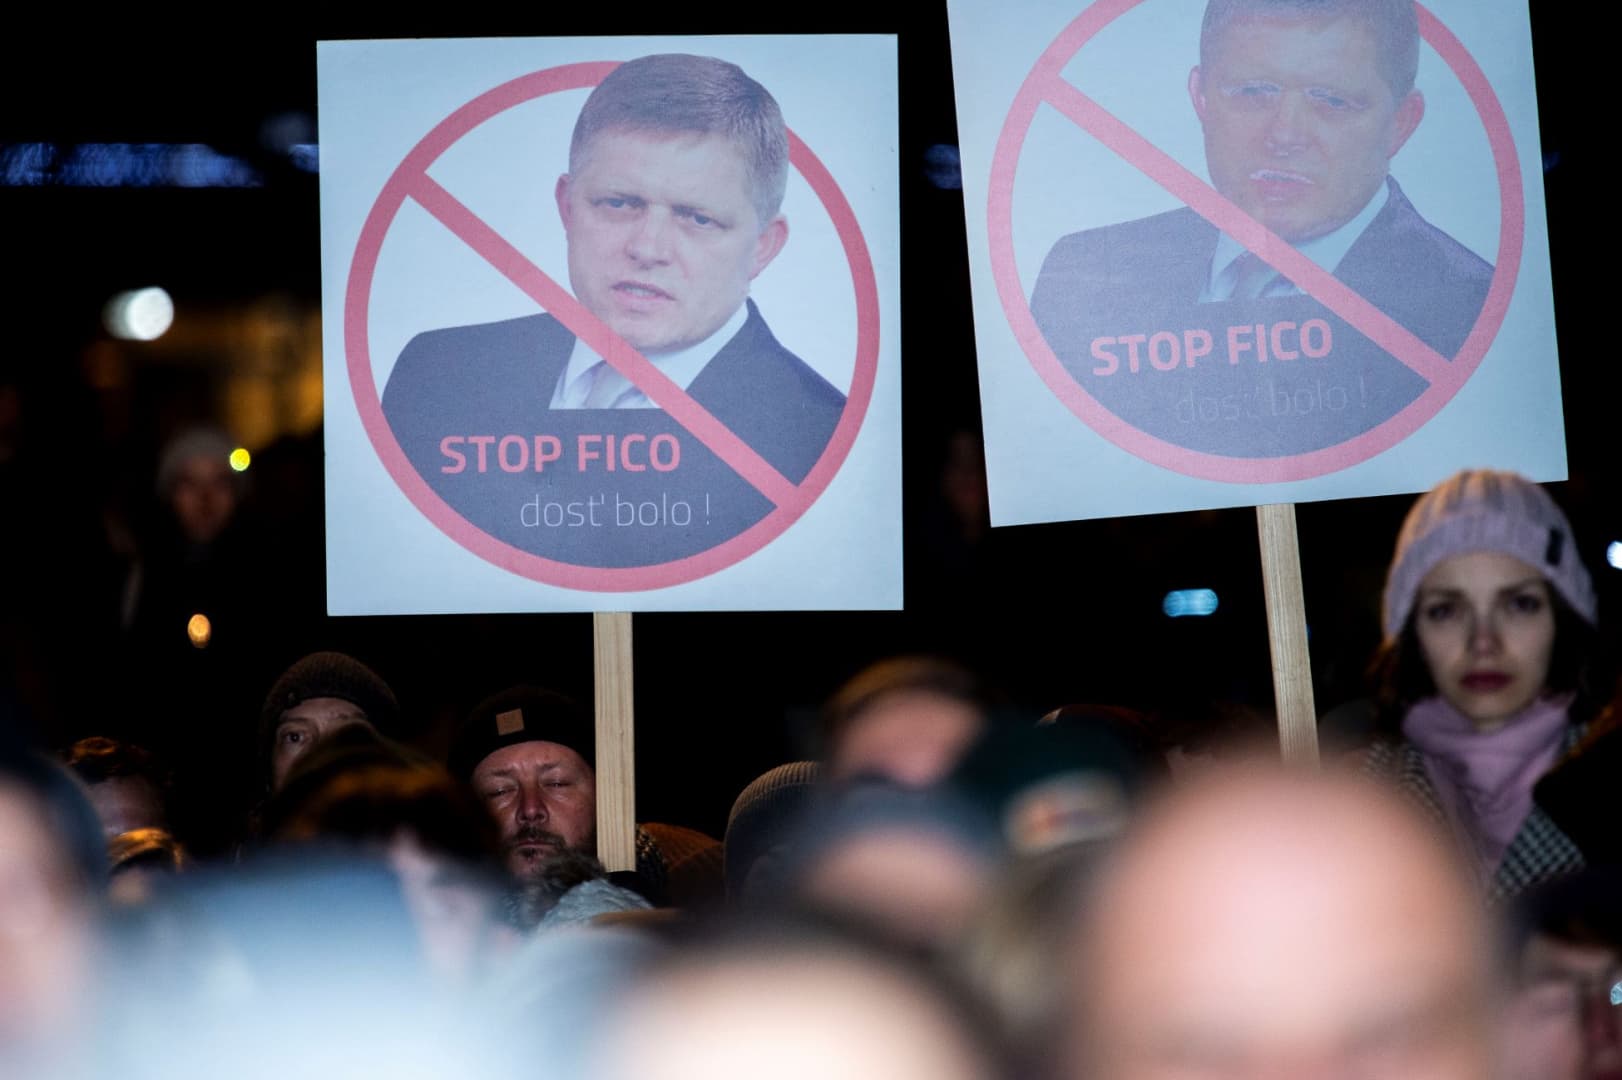 Elég volt Ficóból! – több ezren tiltakoztak Pozsonyban a jogállam leépítése ellen az ellenzék hívására